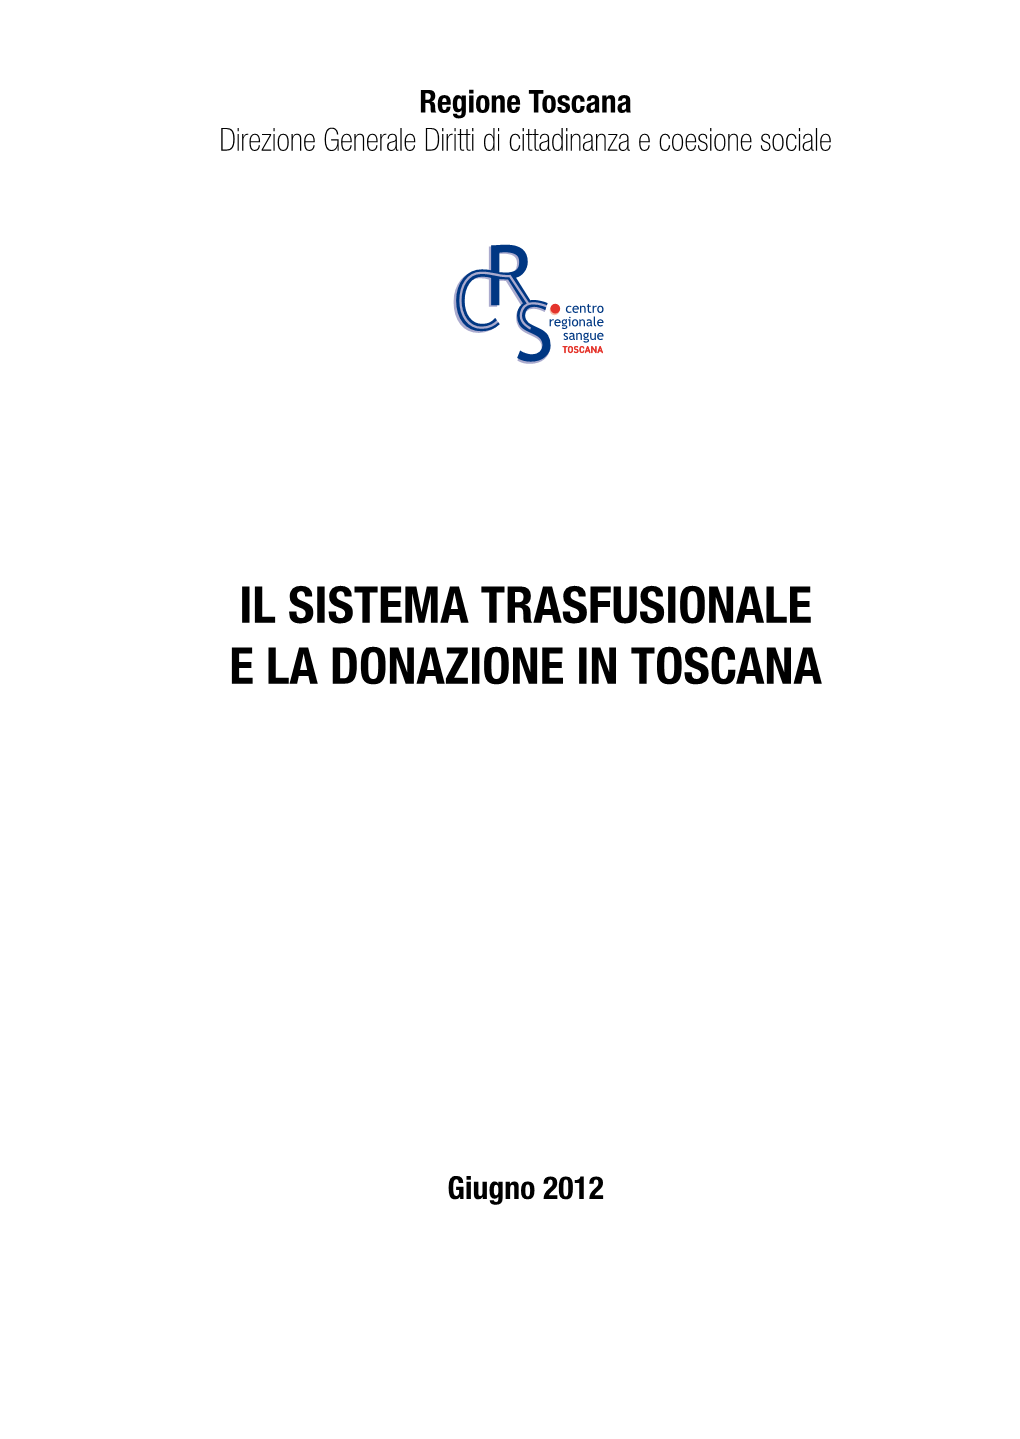 Il Sistema Trasfusionale E La Donazione in Toscana